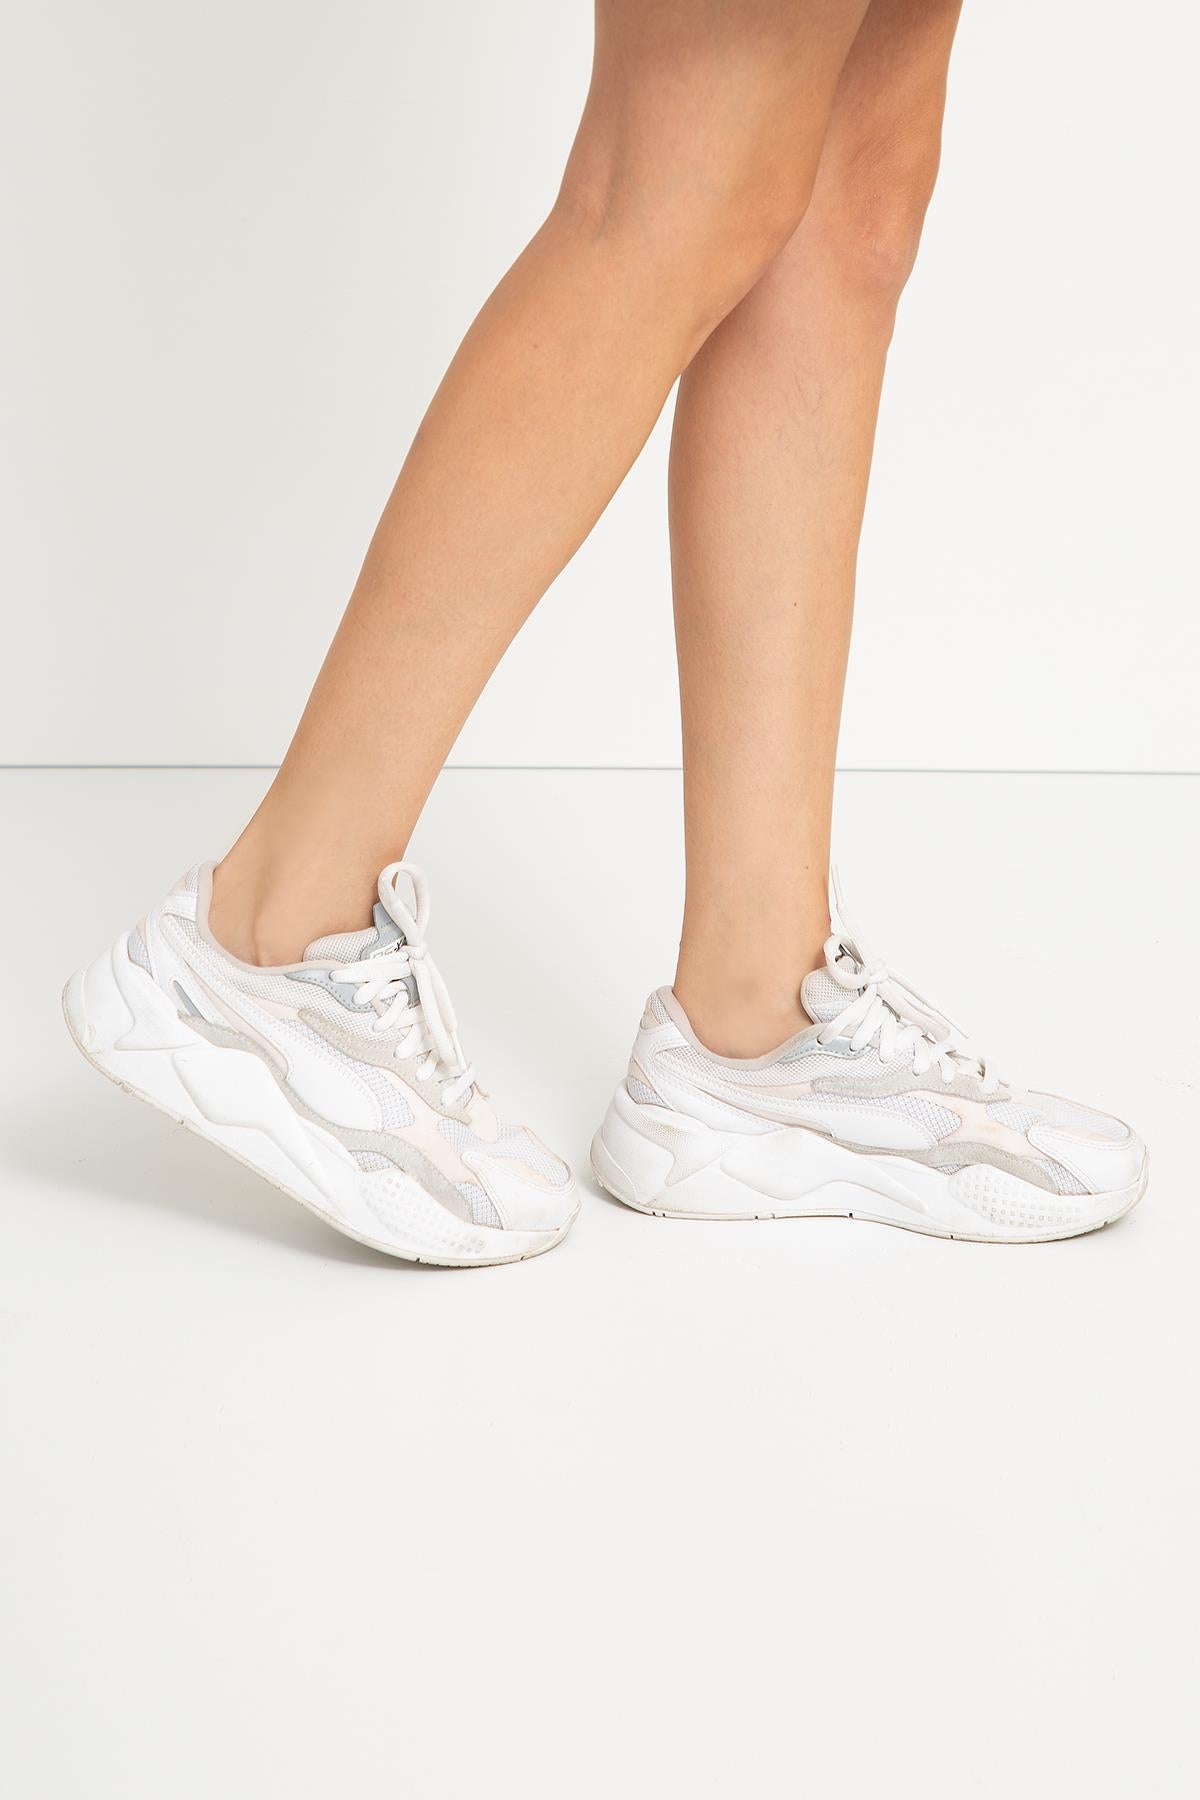 Kadın 6'lı Premium Pamuk Görünmez Spor Çorap (Babet Çorap) - 2 Beyaz, 2 Gri, 2 Siyah - Kutulu